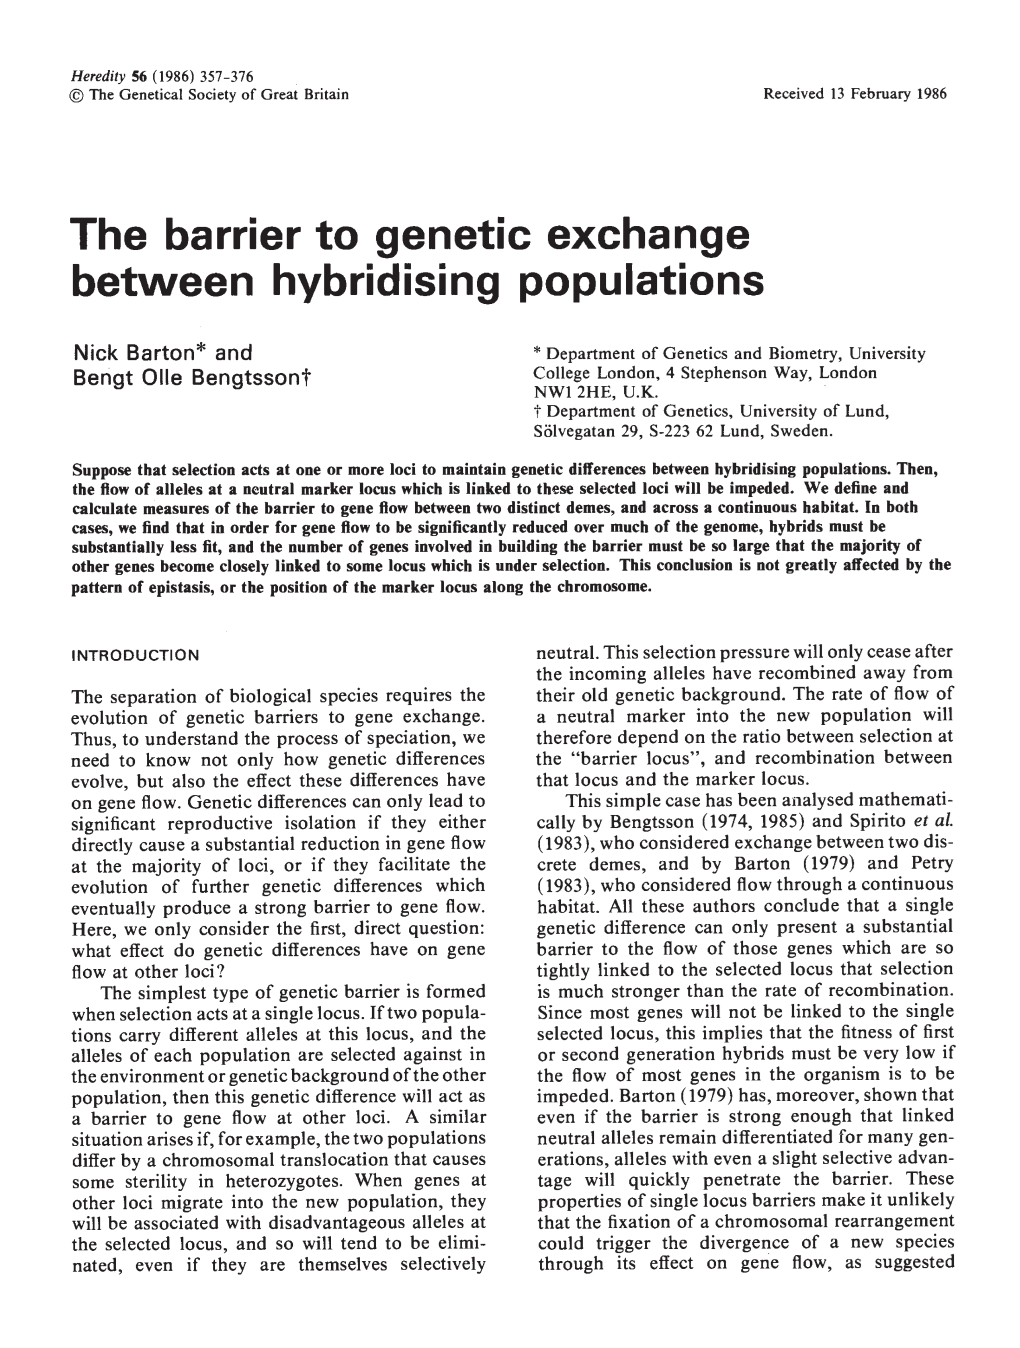 The Barrier to Genetic Exchange Between Hybridising Populations